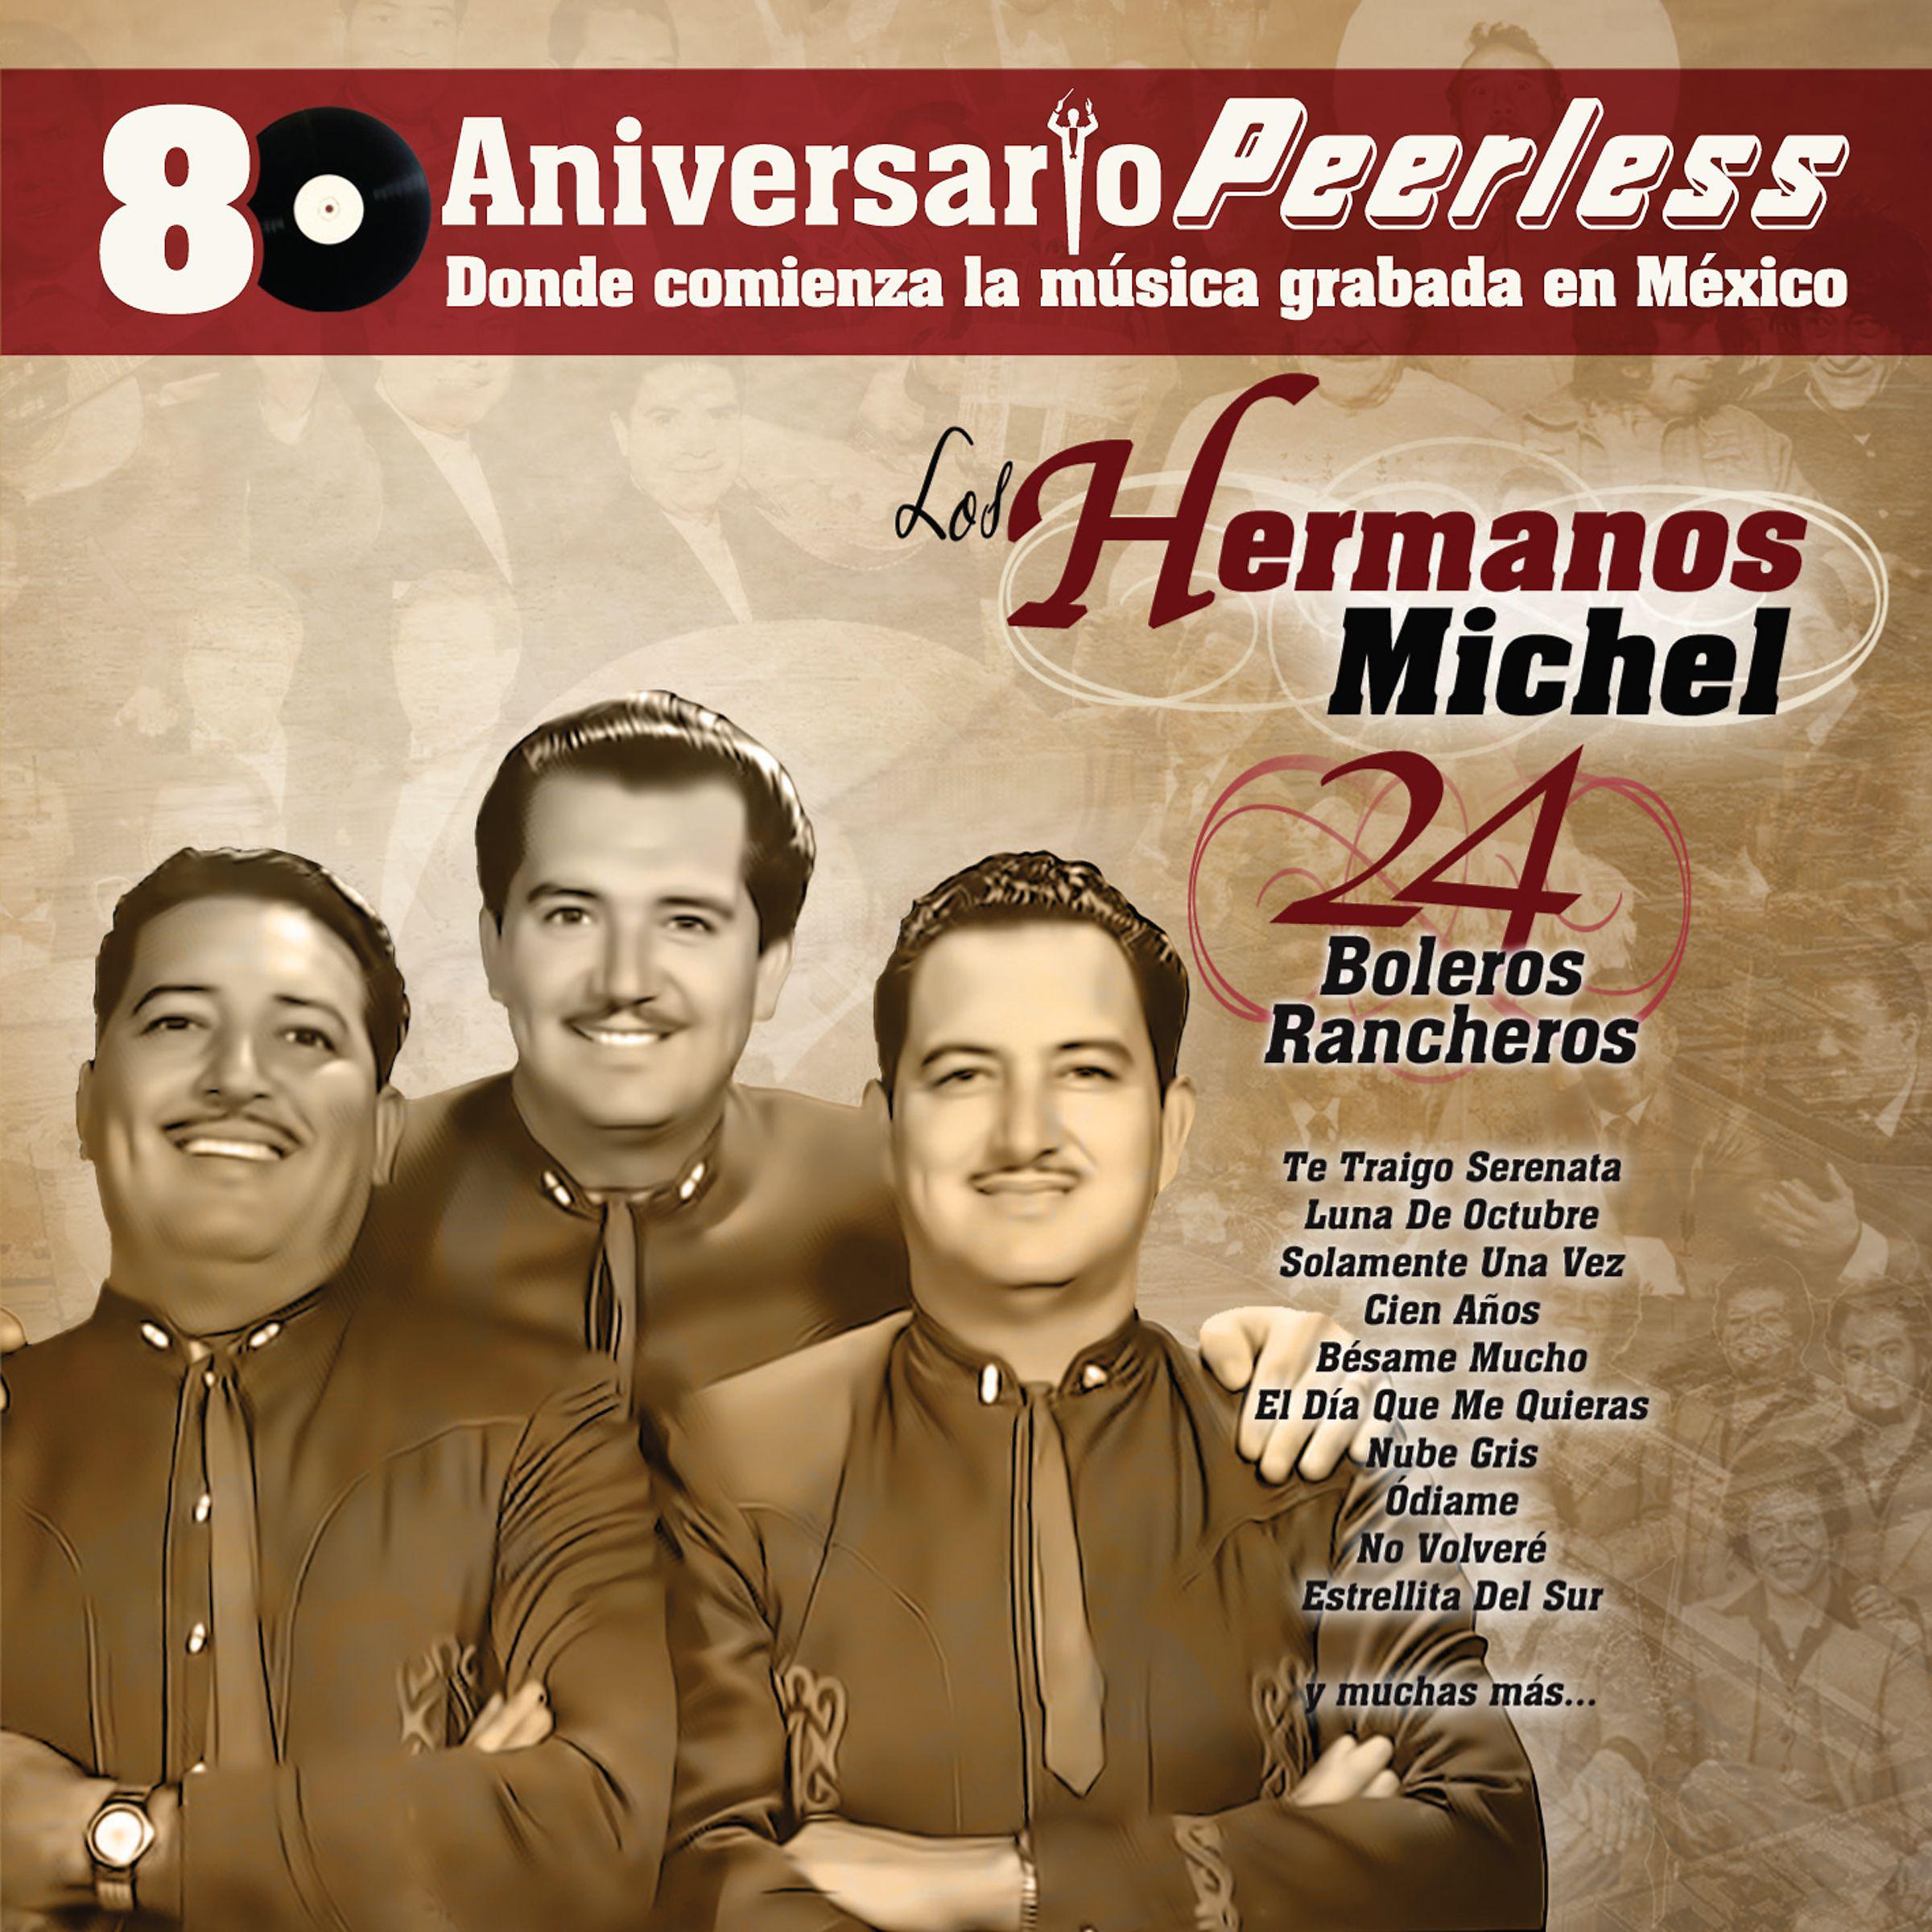 Постер альбома Peerless 80 Aniversario - 24 Boleros Rancheros